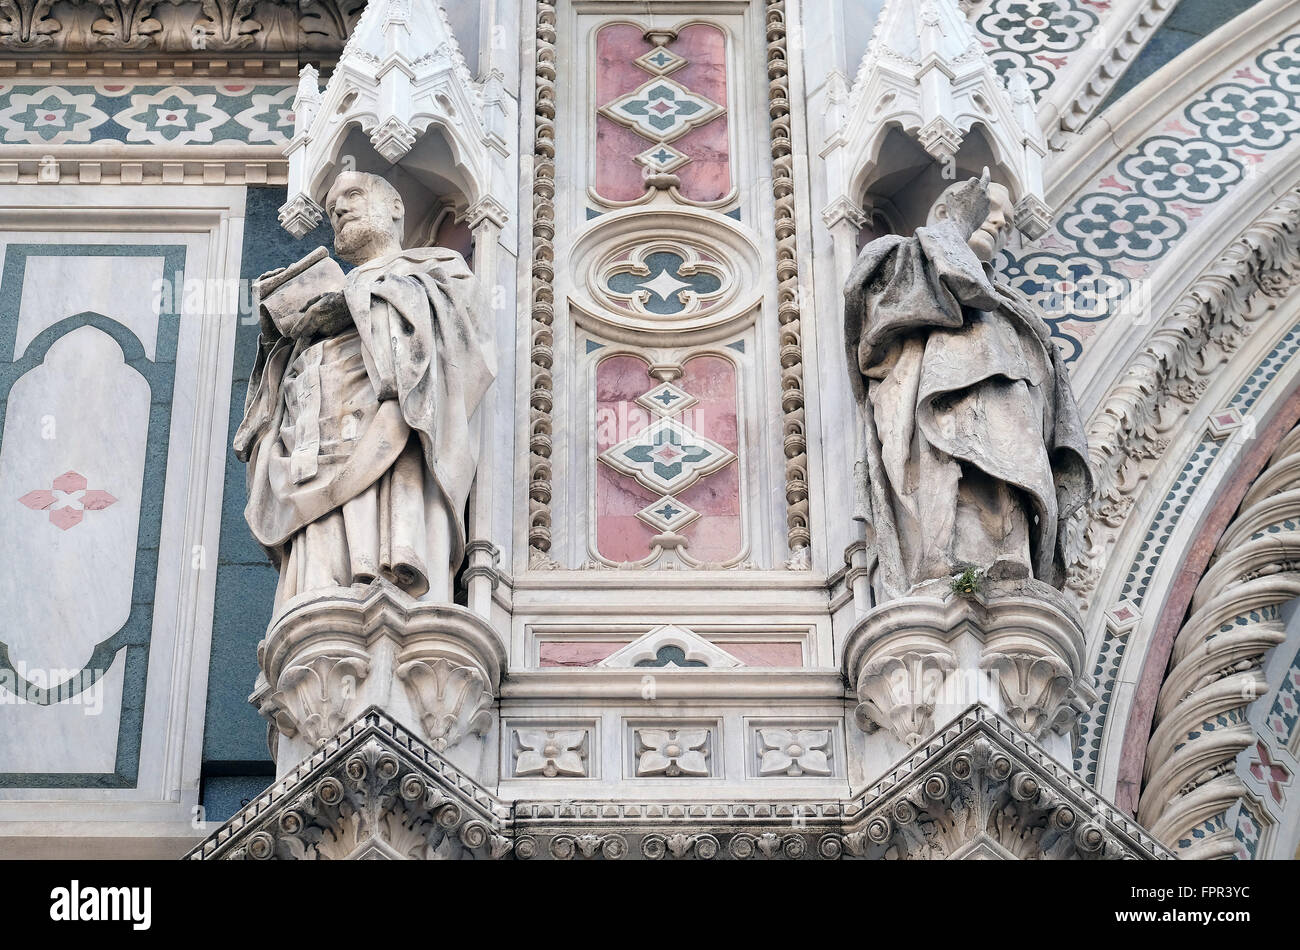 Popes Callixtus I and Celestine I, Portal of Cattedrale di Santa Maria del Fiore, Florence, Italy Stock Photo